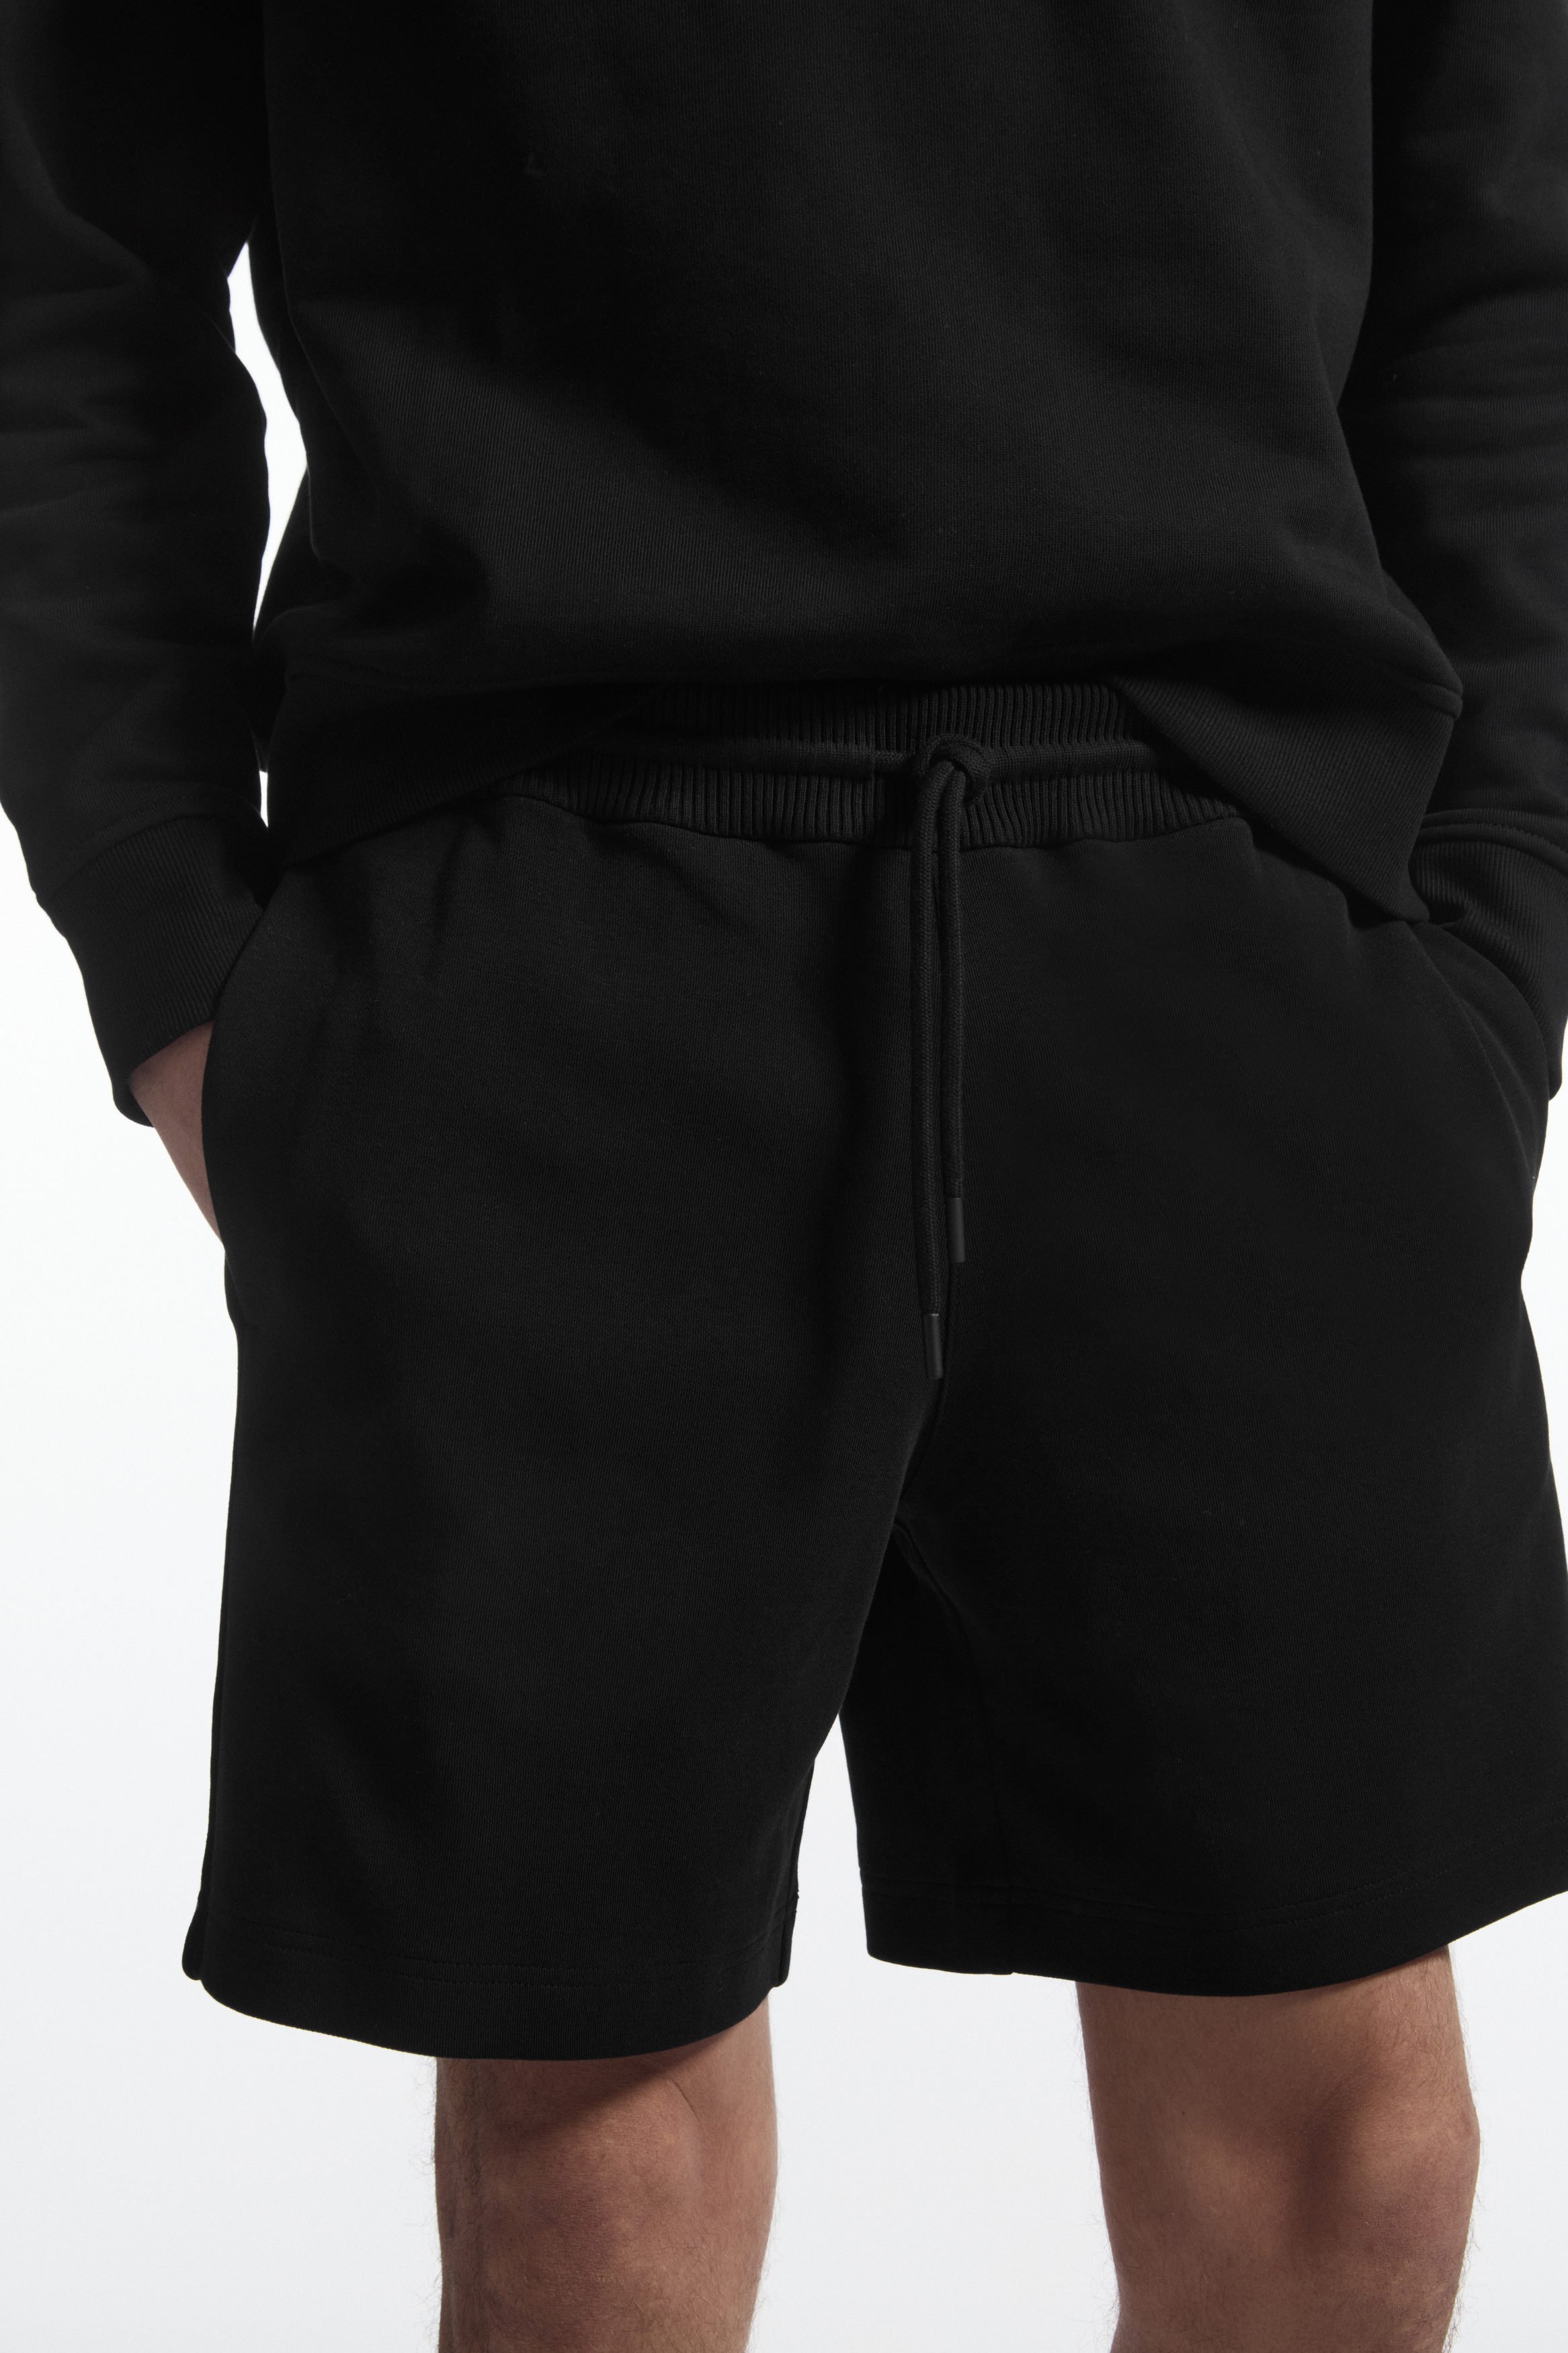 NELEUS Men's 3 Pack Performance Compression Shorts, 6010# Black/Grey/Blue,  L price in UAE,  UAE